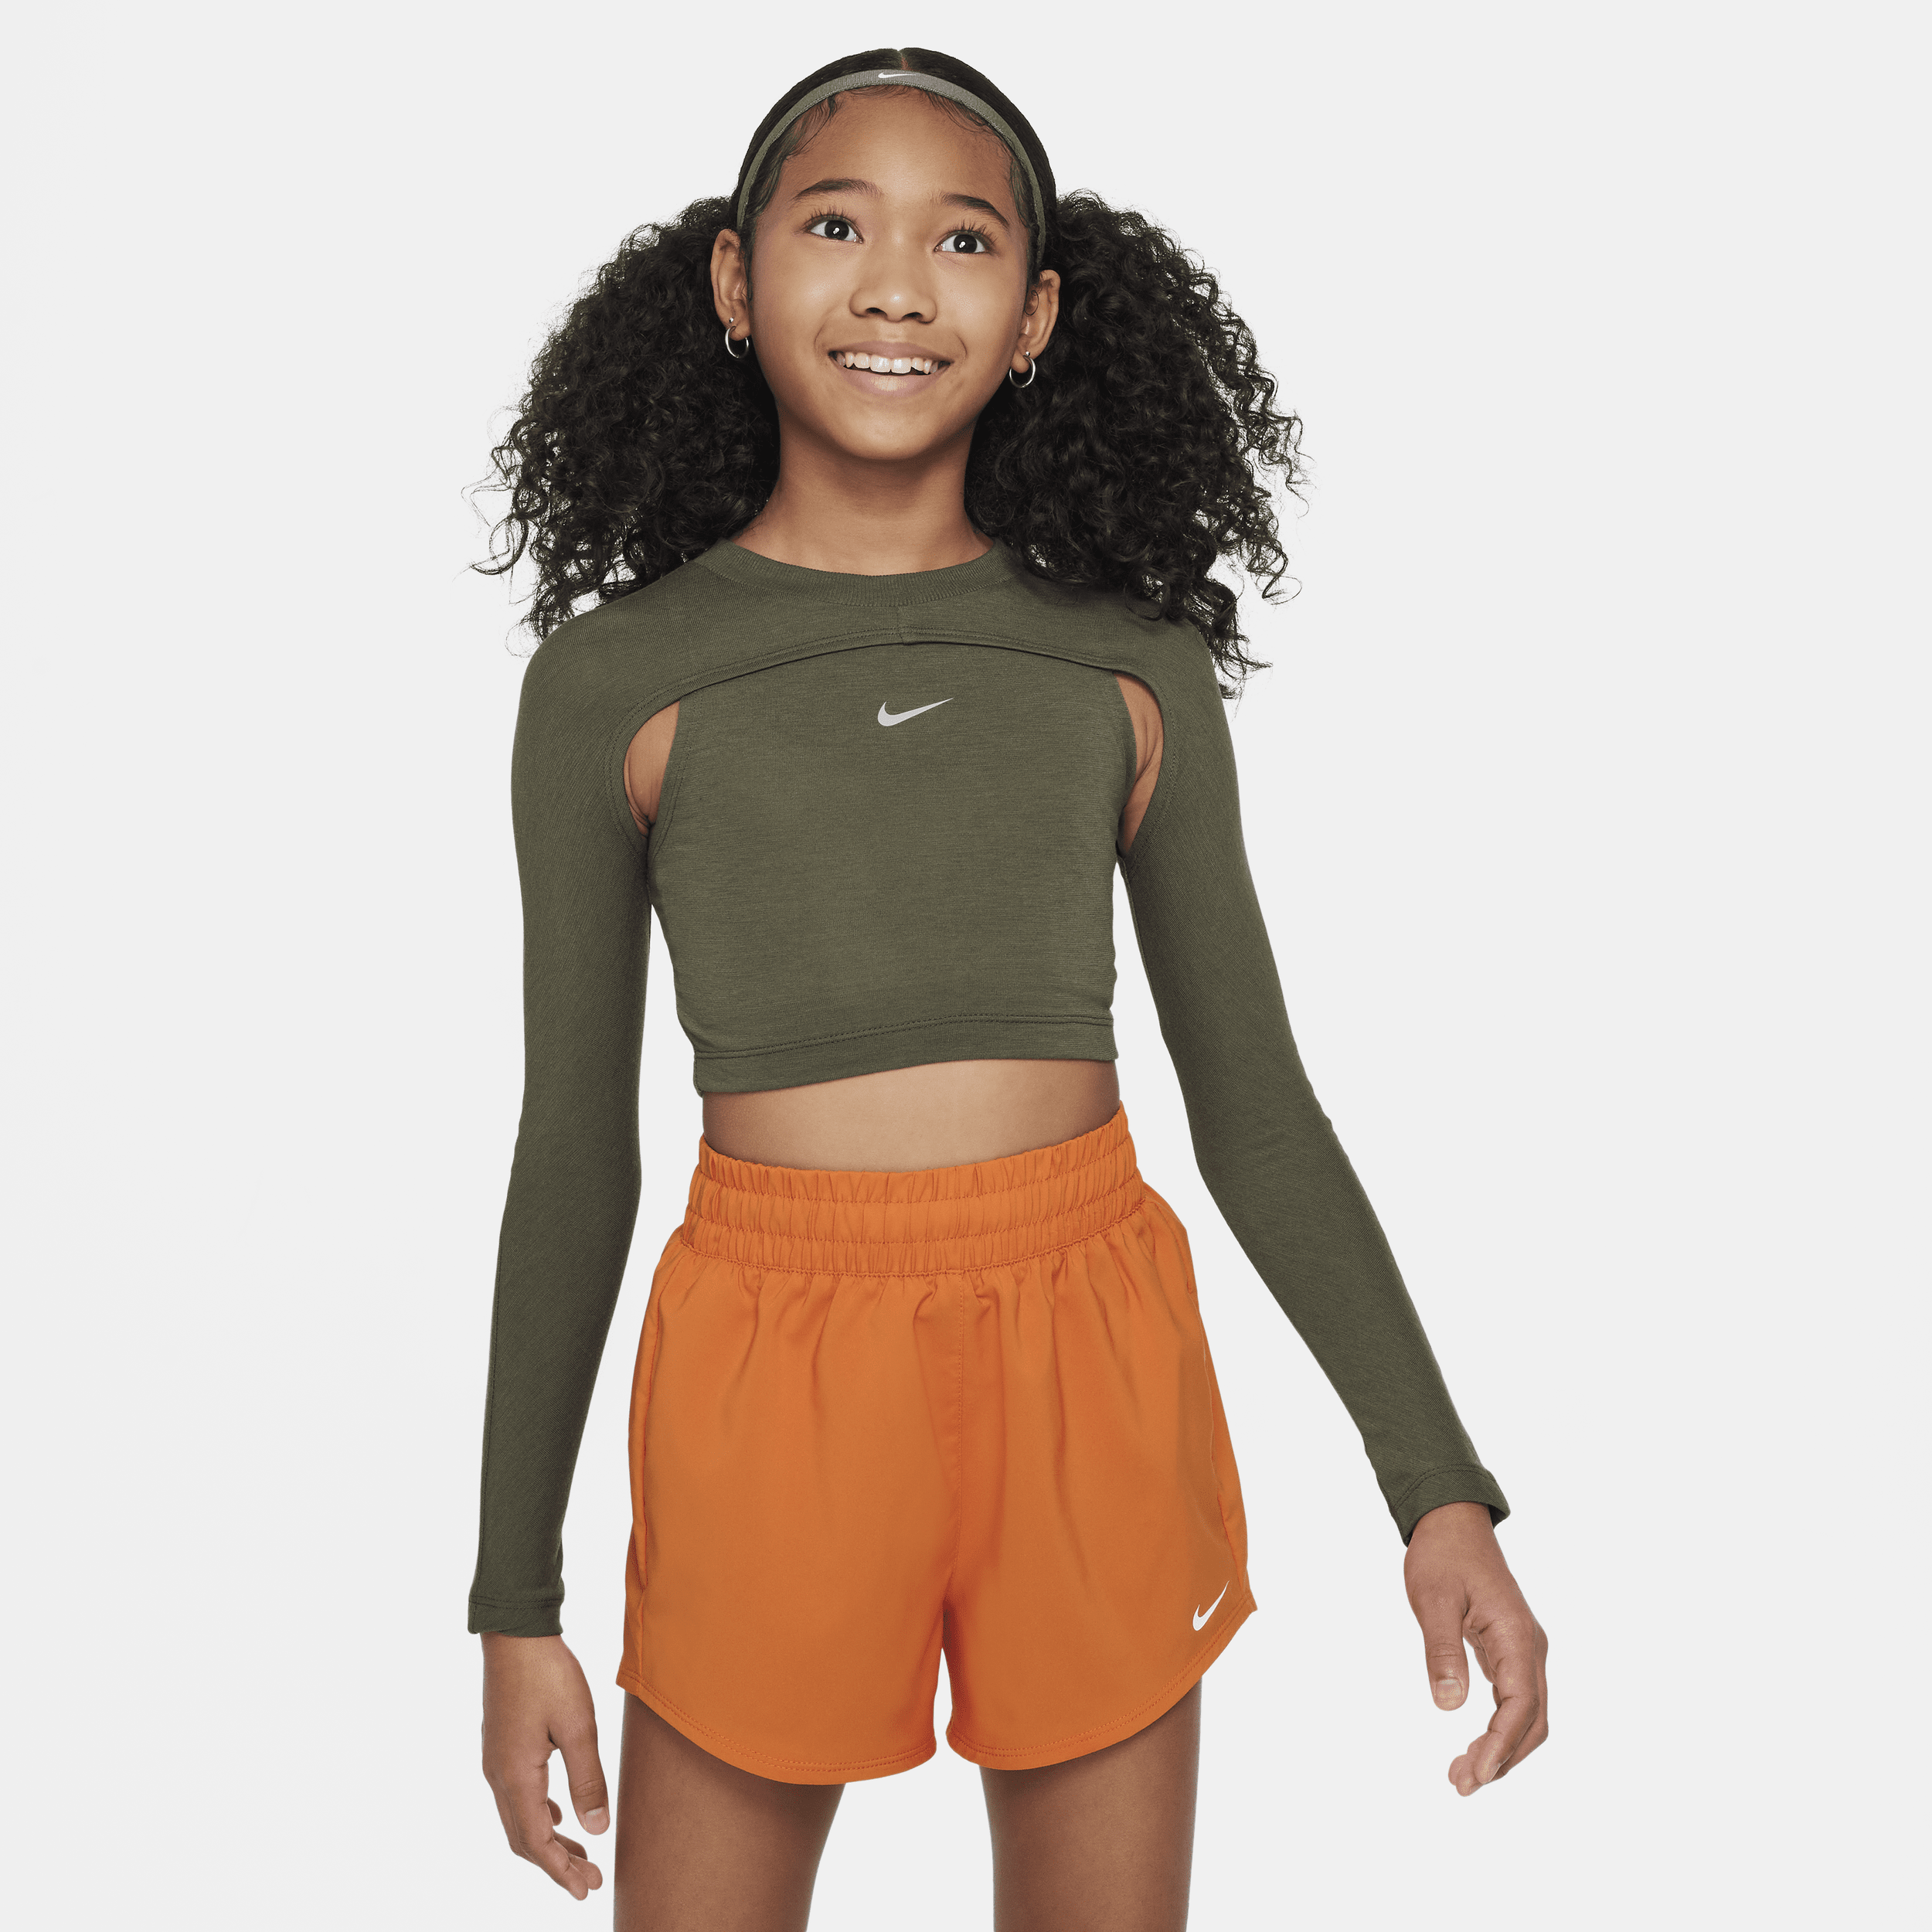 Nike Kids' Women's Girls' Dri-fit Long-sleeve Top In Green